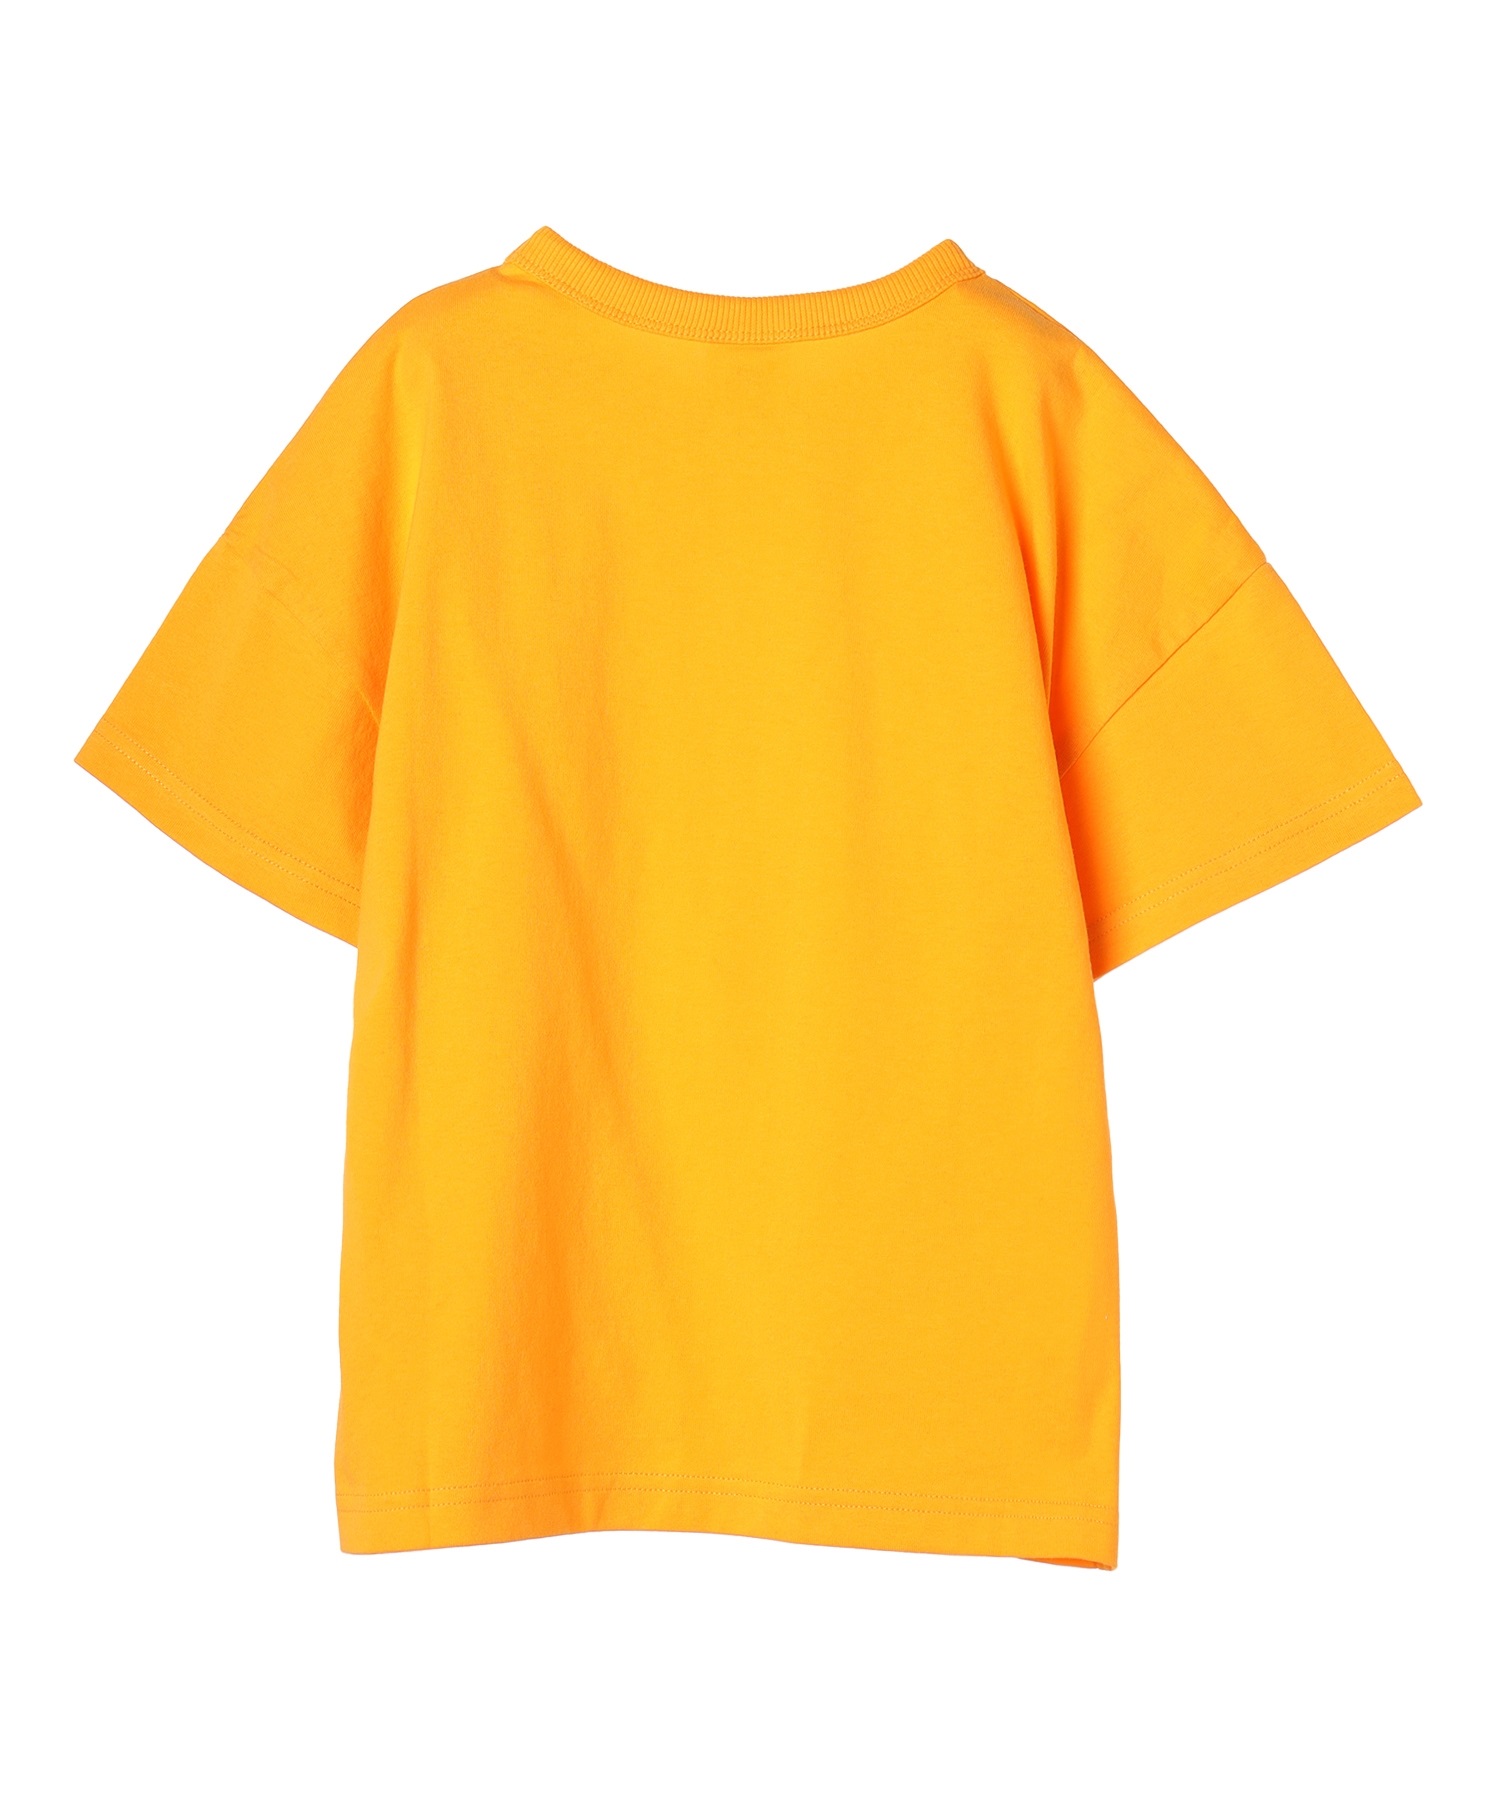 【マトメガイ対象】CHAMPION チャンピオン MUJI CK-Z304 キッズ 半袖Tシャツ(535-100cm)